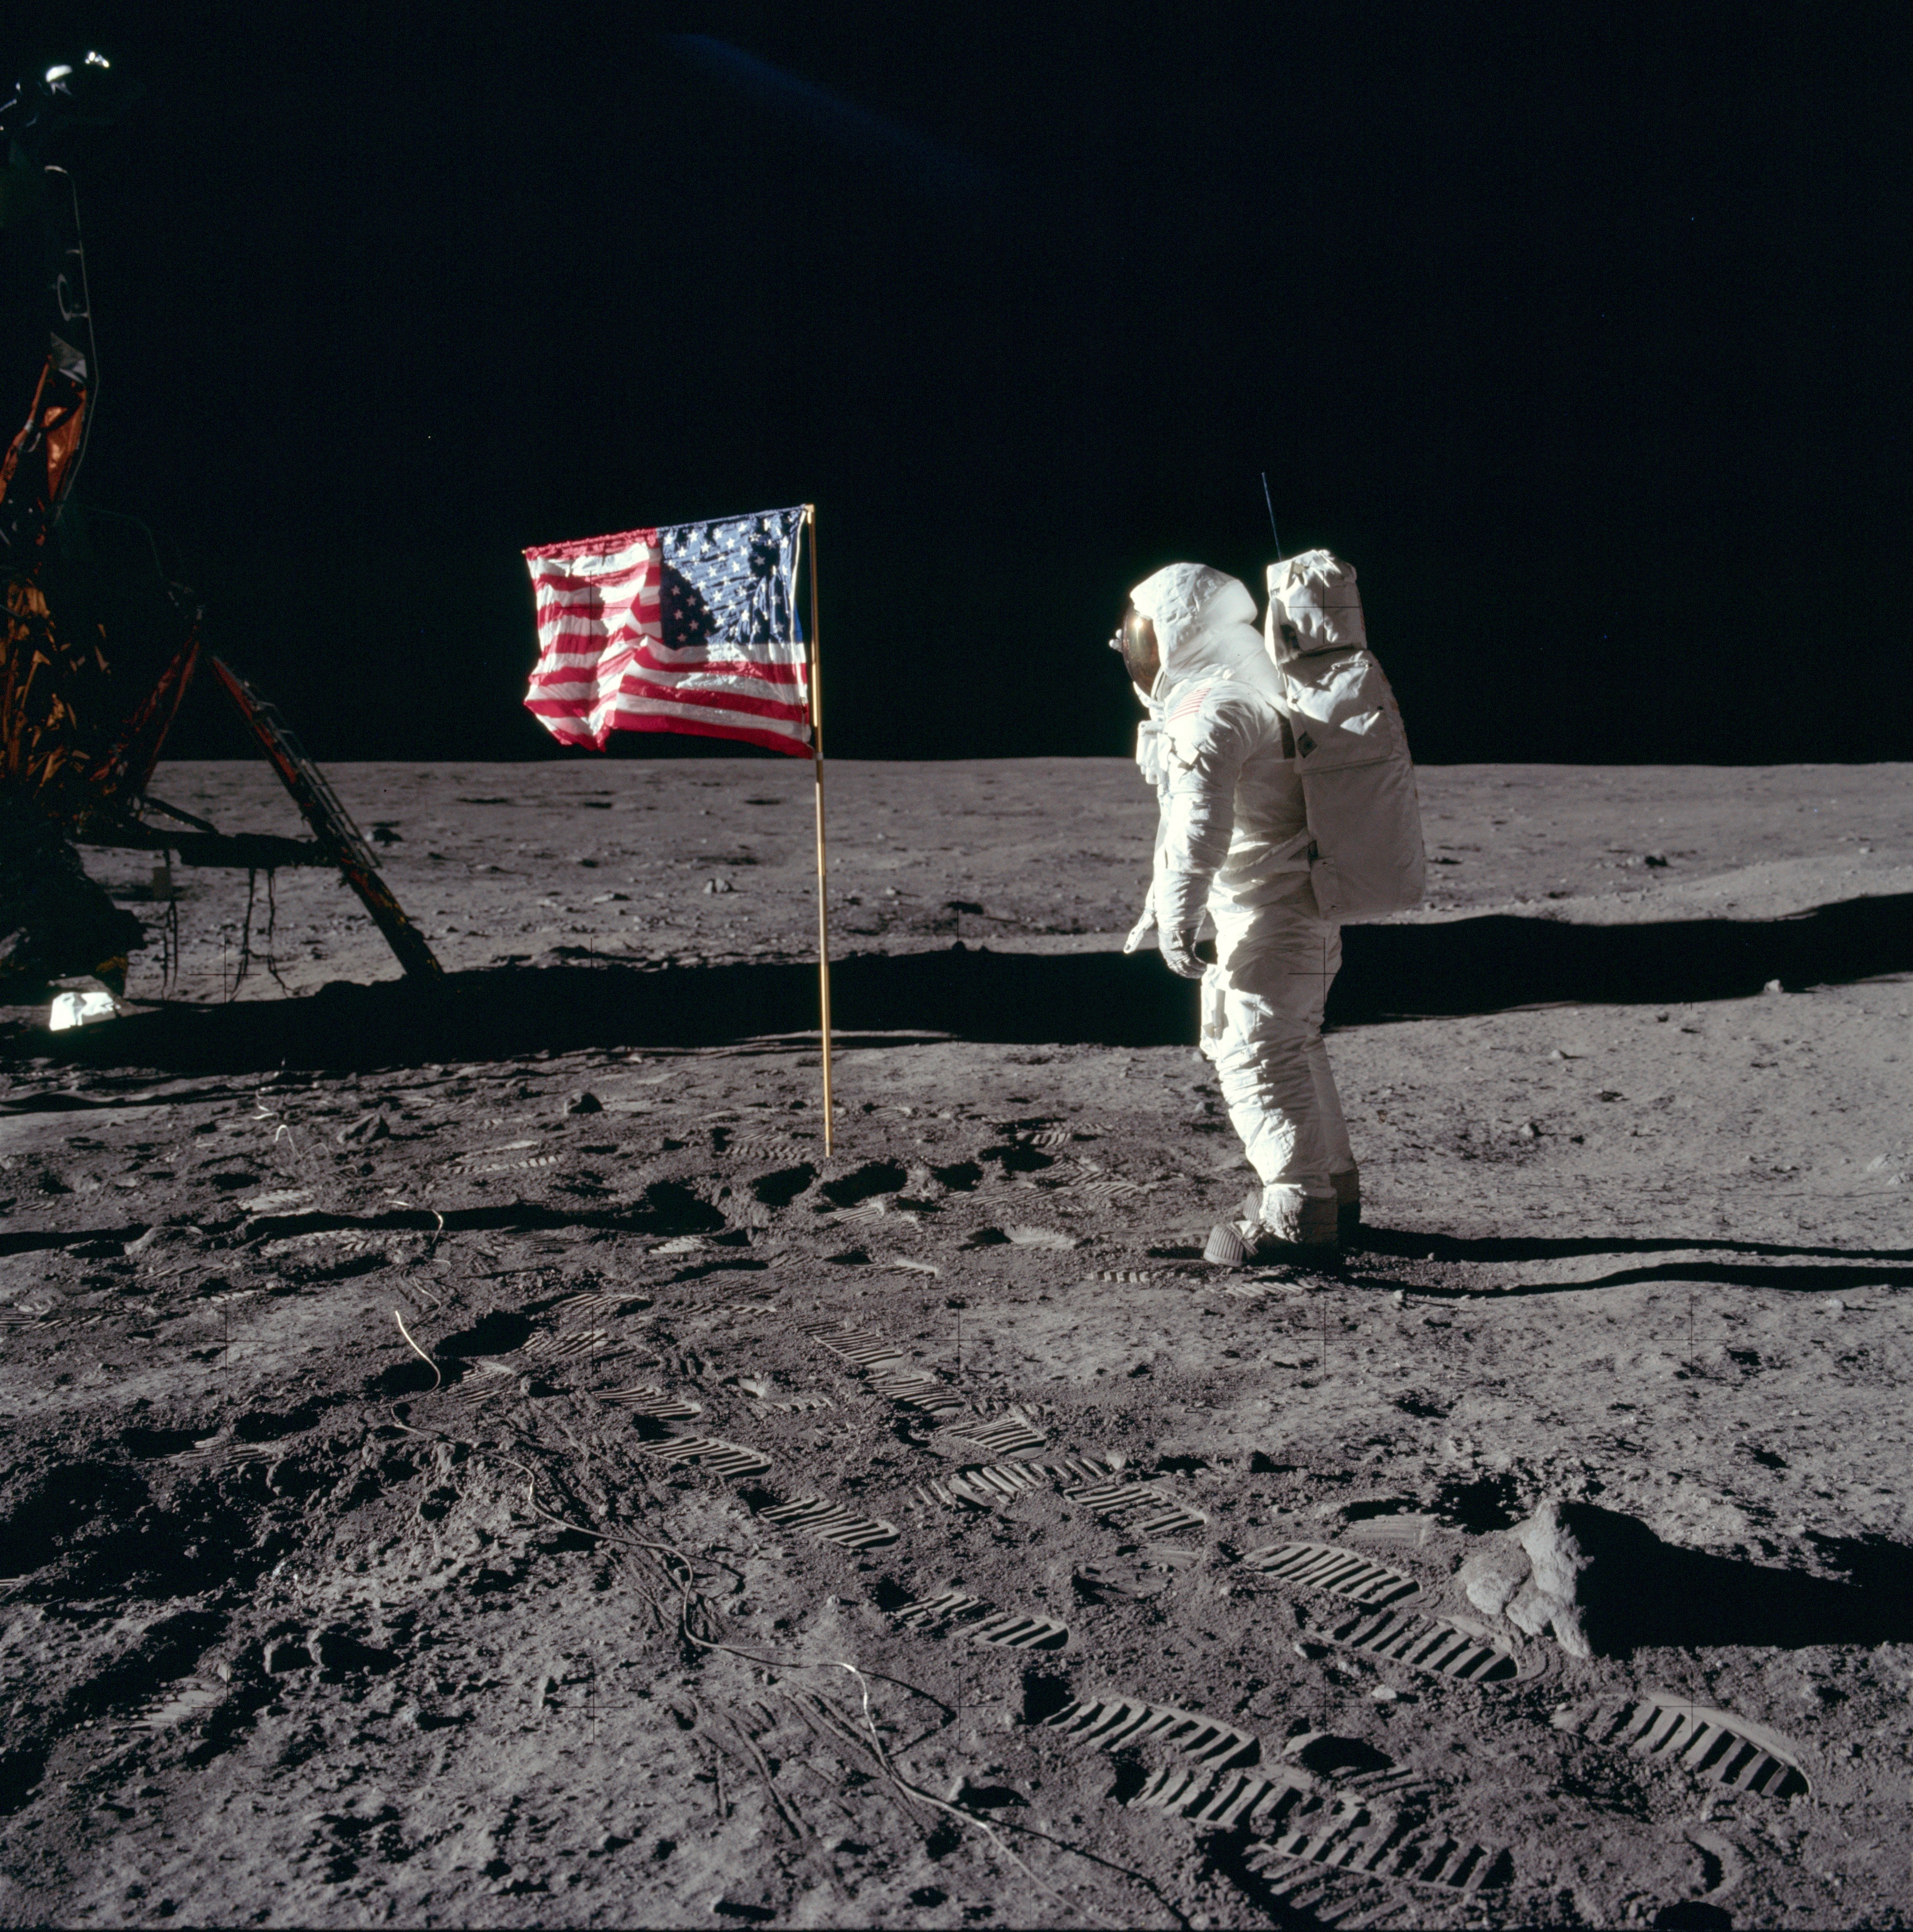 Buzz Aldrin ในชุดอวกาศบนพื้นผิวดวงจันทร์ถัดจากธงชาติสหรัฐฯ